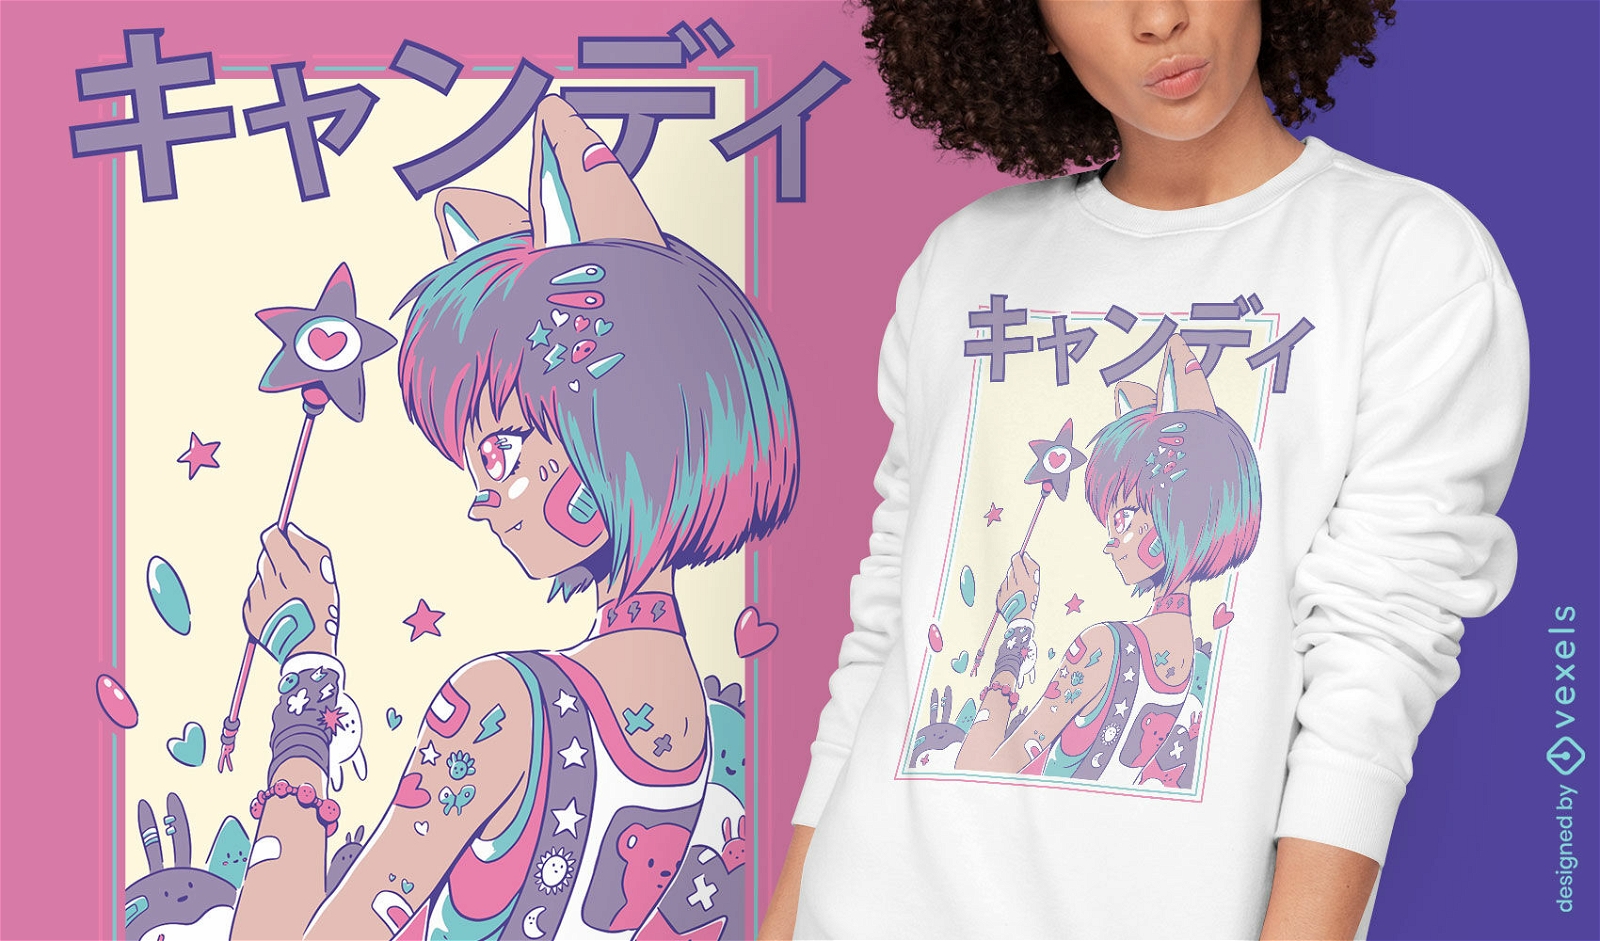 Baixar Vetor De Design Fofo De T-shirt De Anime Com Anjo